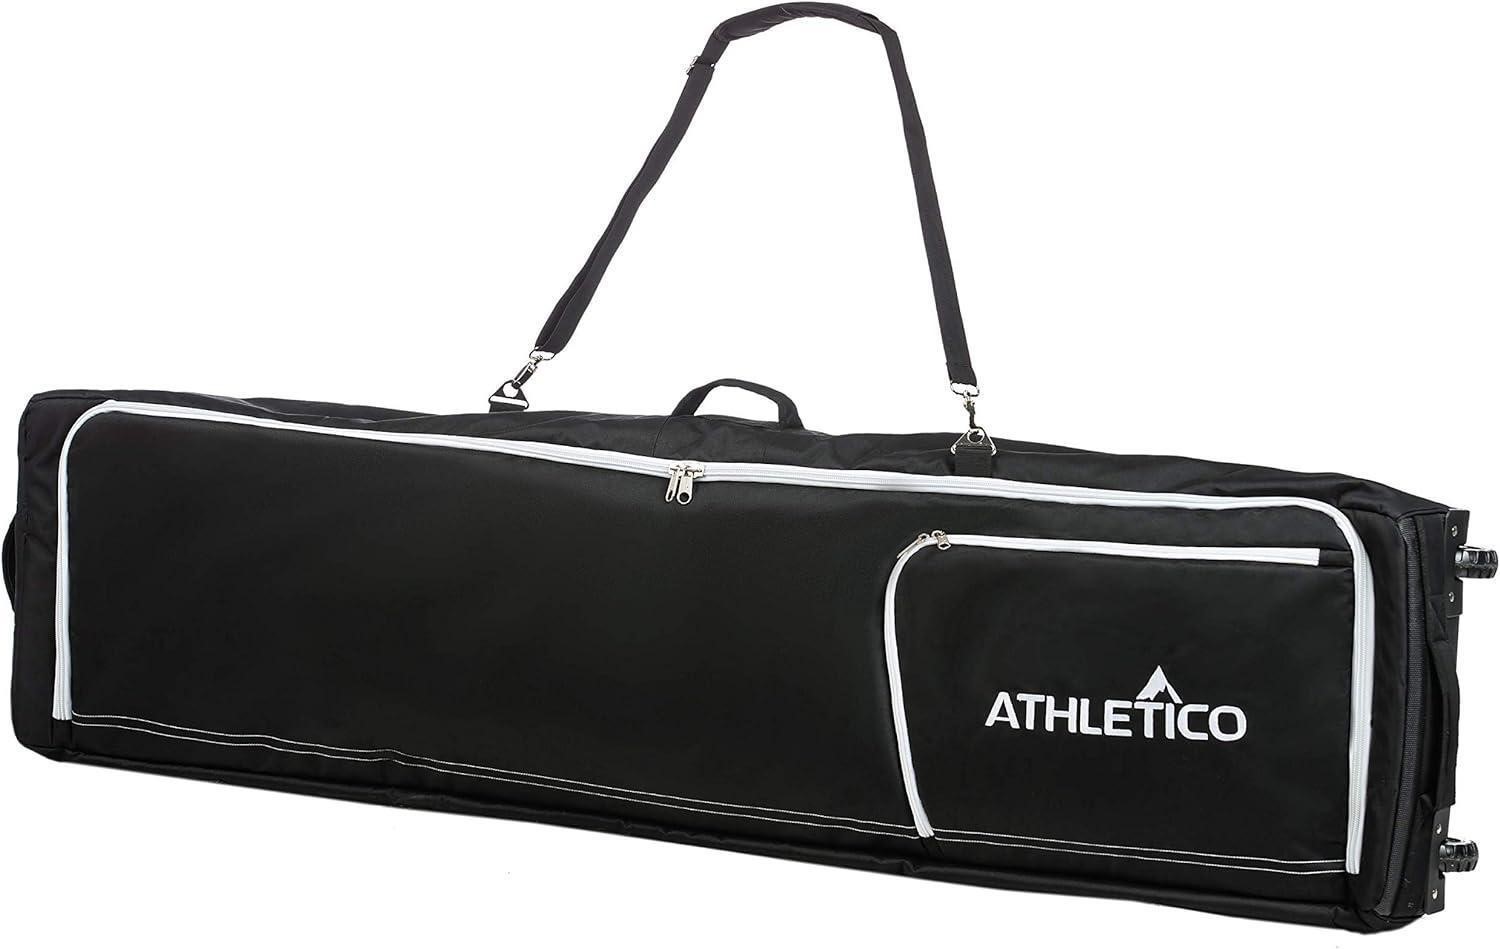 Athletico Conquest Snowboard Bag